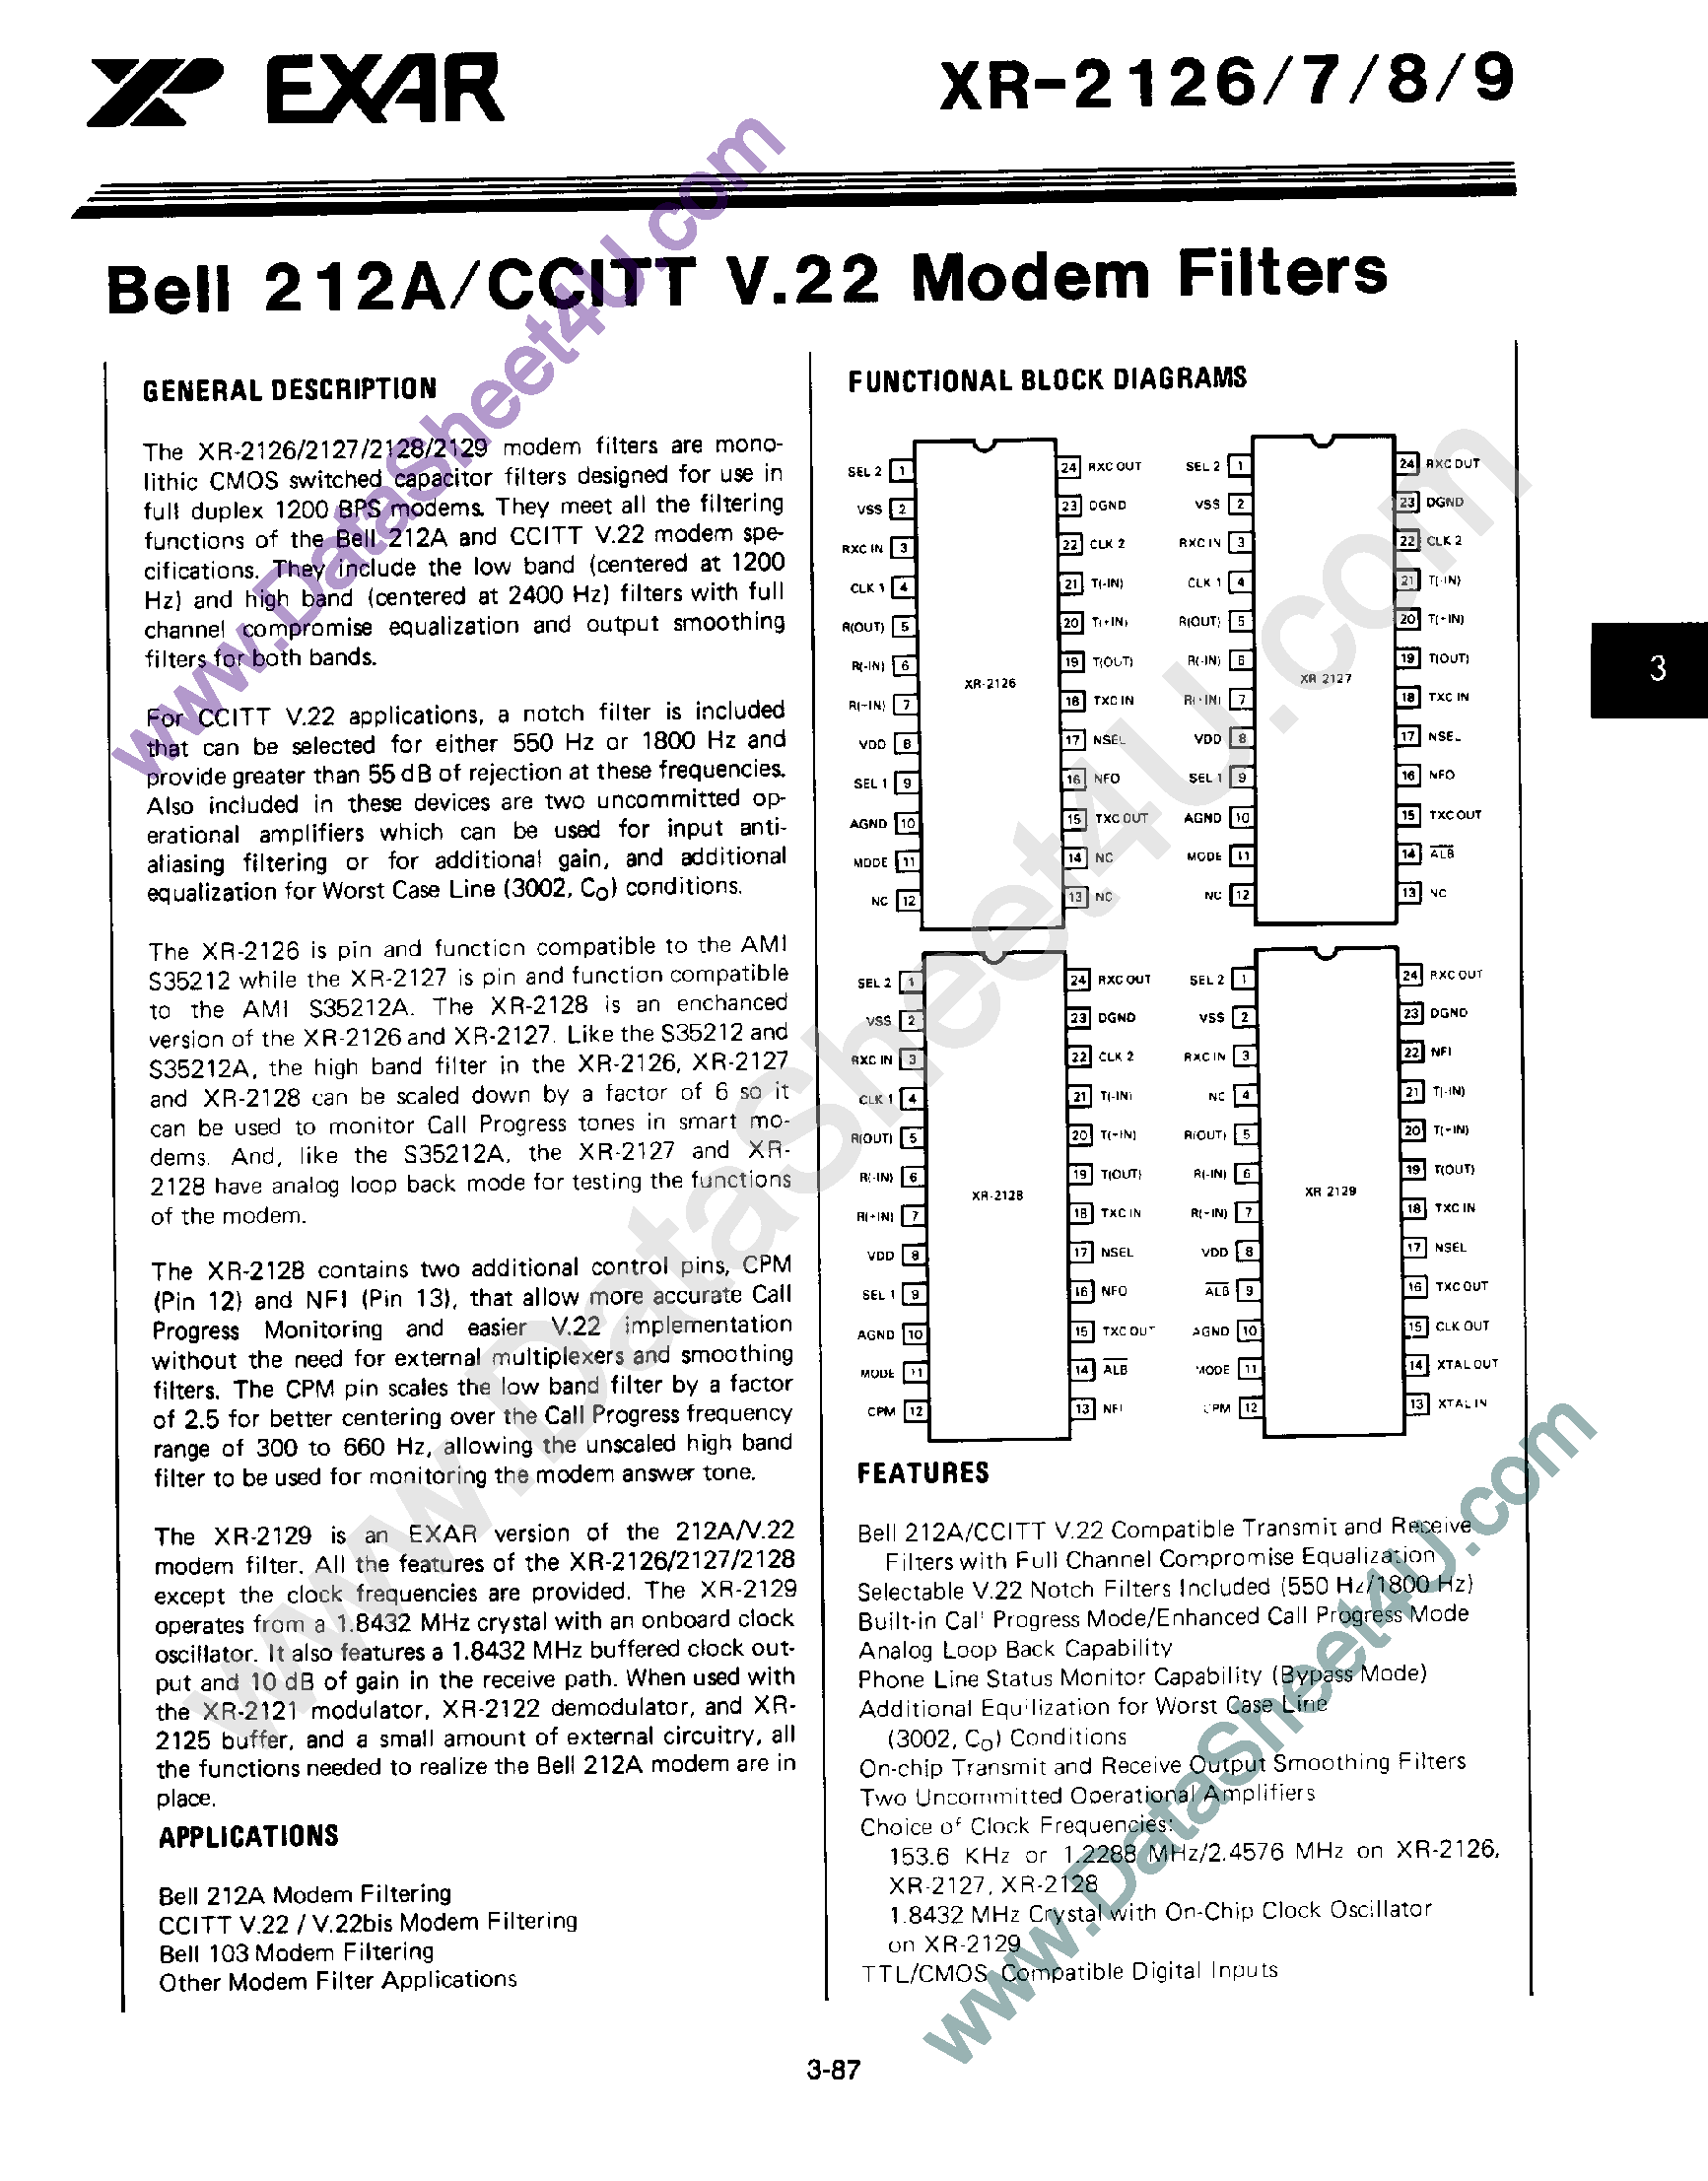 Datasheet XR2129 - Bell 212A / CCITT V.22 Modem Filters page 1